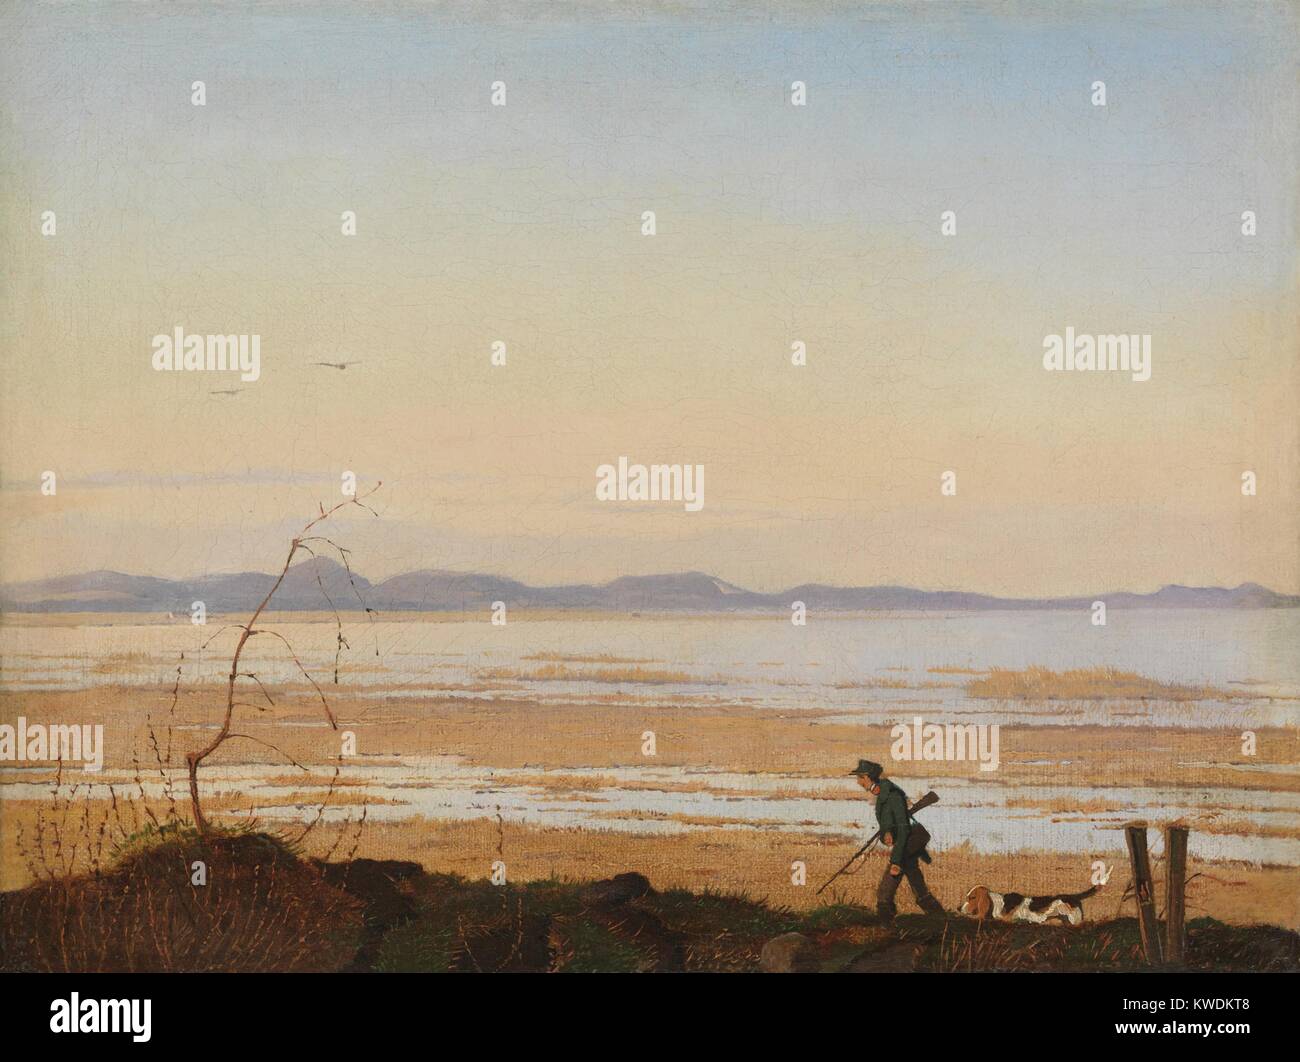 Ein Abend am See ARRESO, von Johan Thomas Lundbye, 1837, der Dänischen Malerei, Öl auf Leinwand. Landschaft der Ansager, die liegt zwischen der größten Dänemark See, Aresso, und das Meer (BSLOC 2017 9 140) Stockfoto